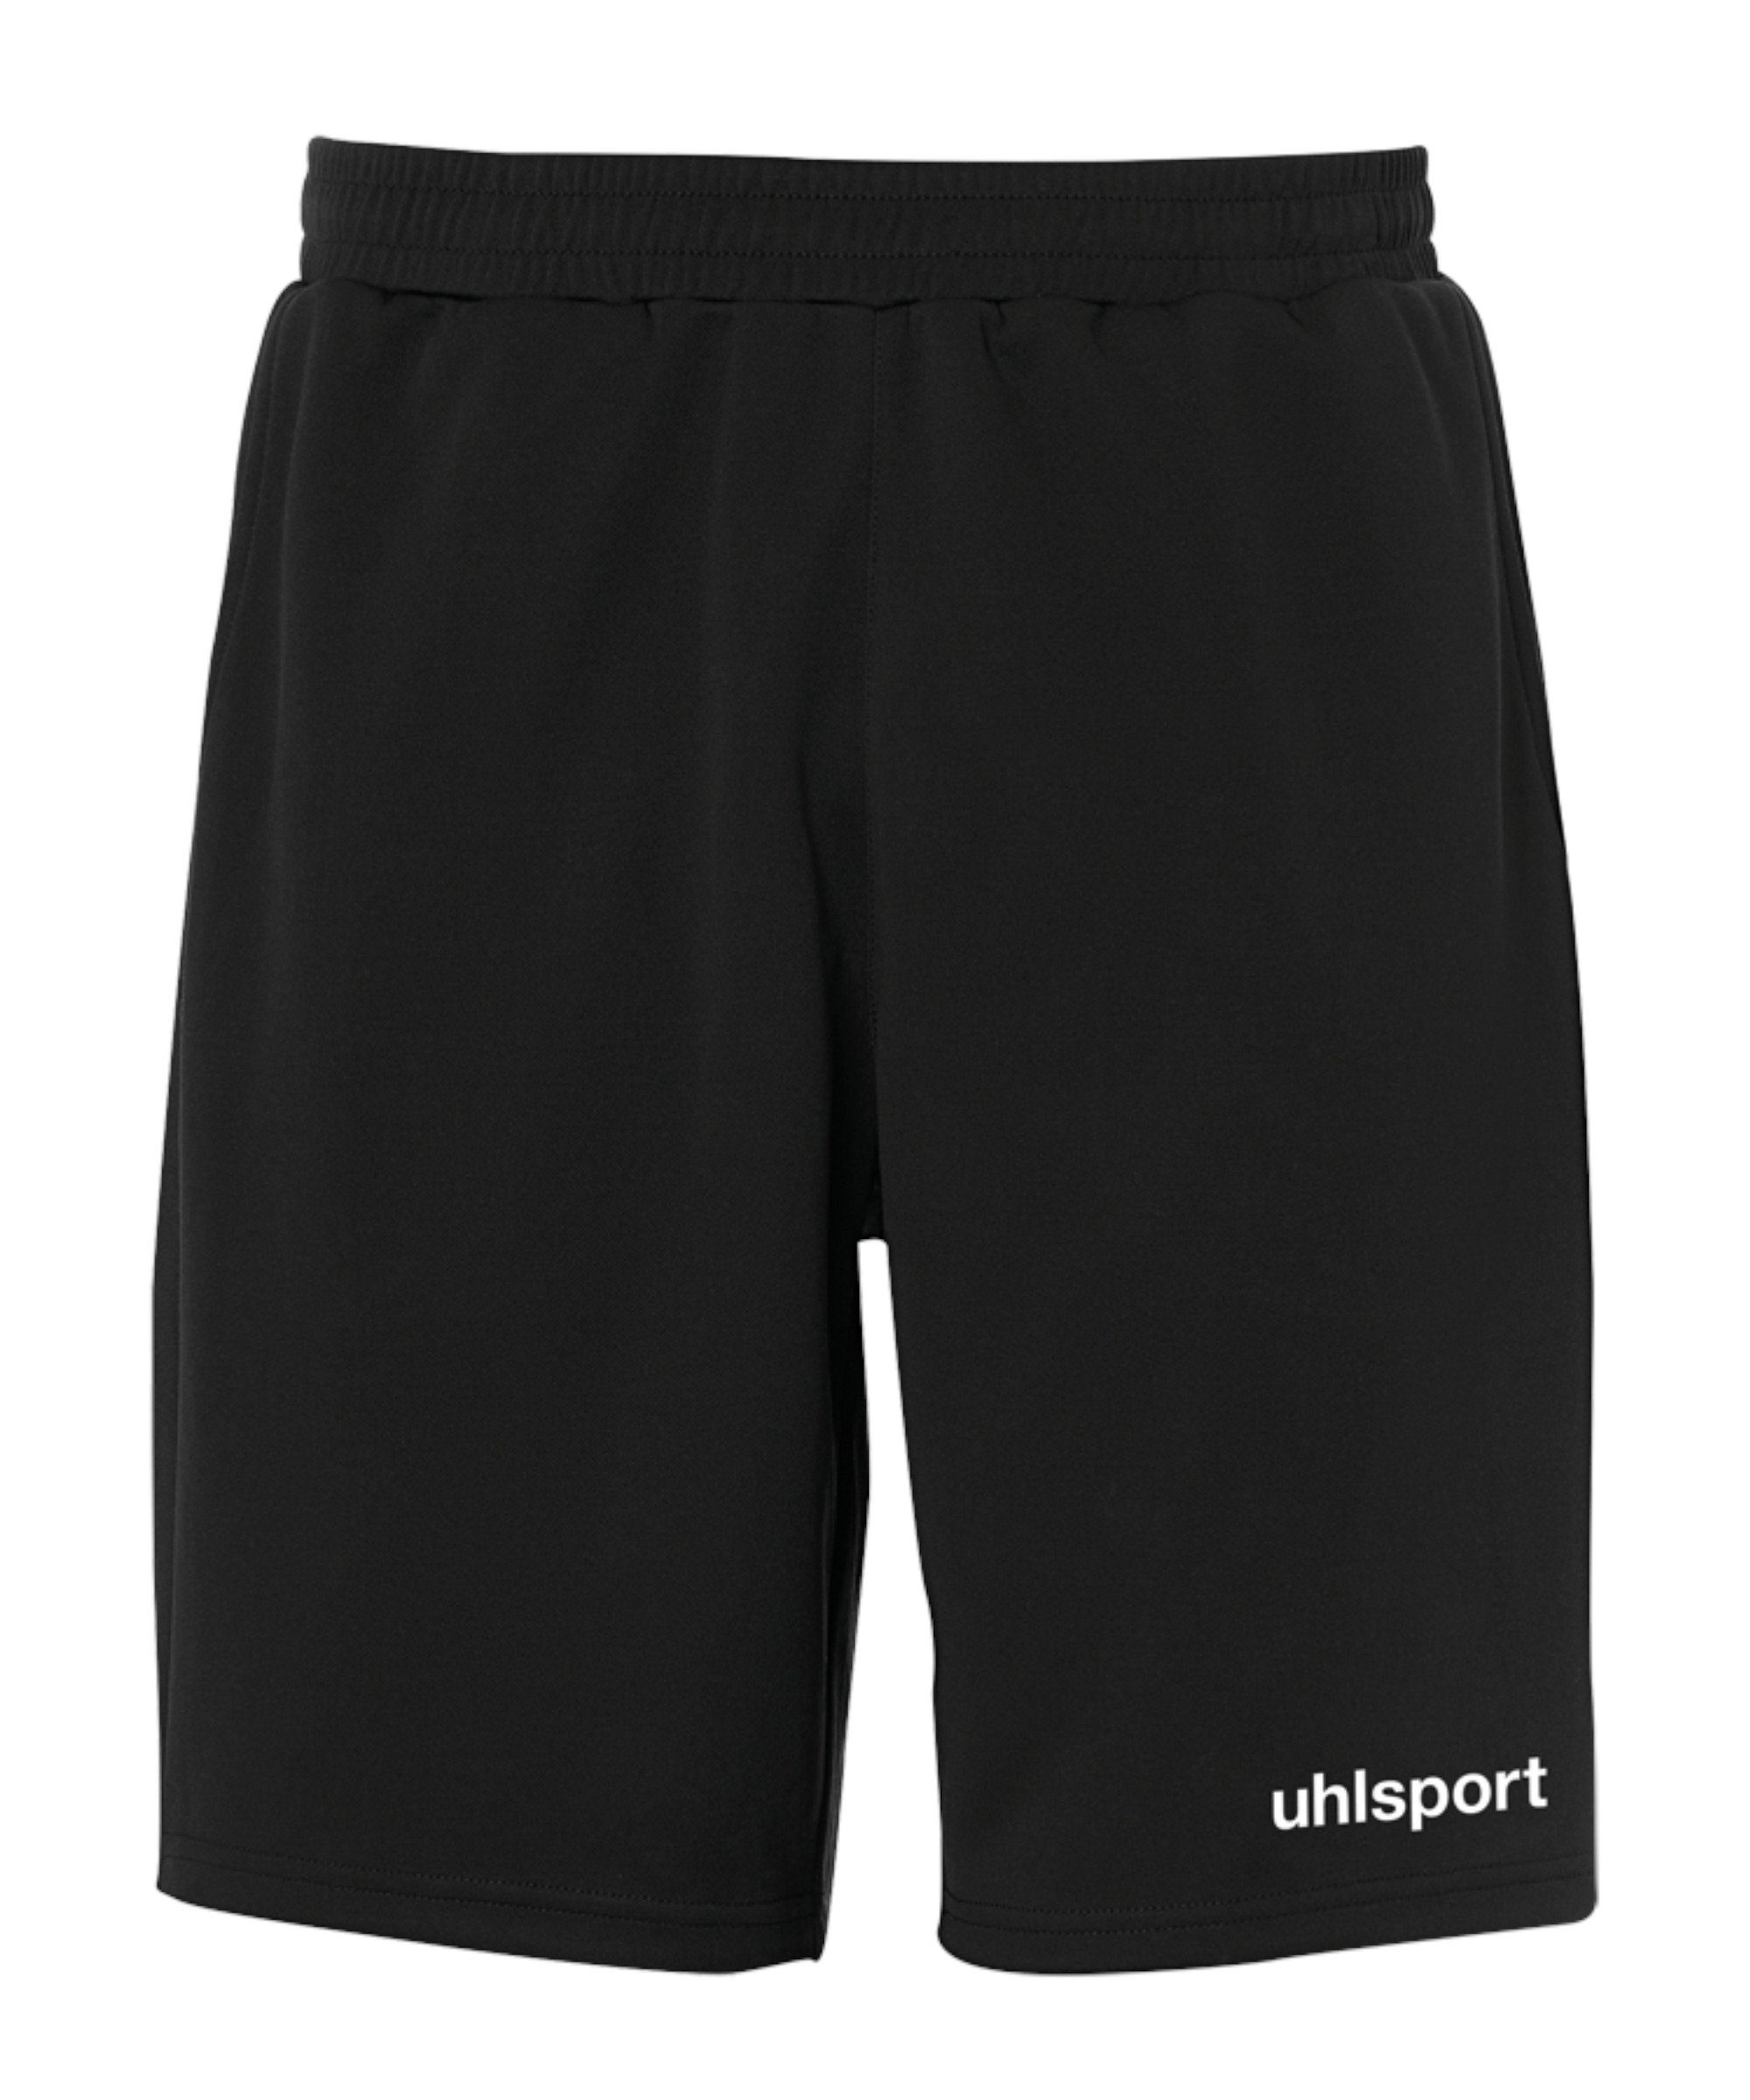 PES-Short schwarz Essential Sporthose uhlsport